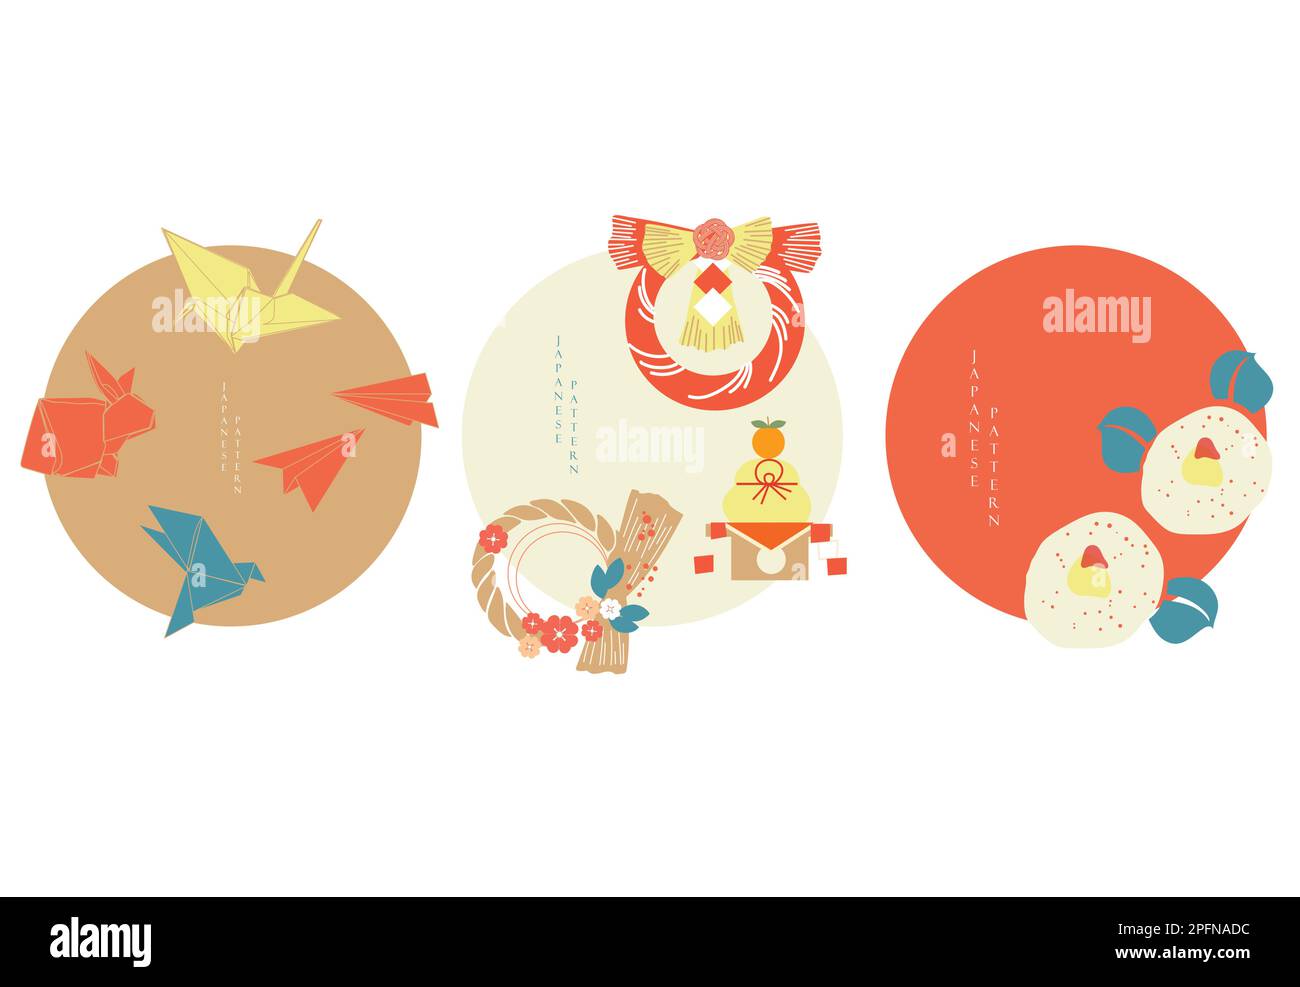 Asiatische Symbole mit japanischem Muster. Set aus modernen Grafikelementen mit einer feierlichen Ikone. Vorlage für Logodesign, Flyer oder Präsentation. Neujahr i Stock Vektor